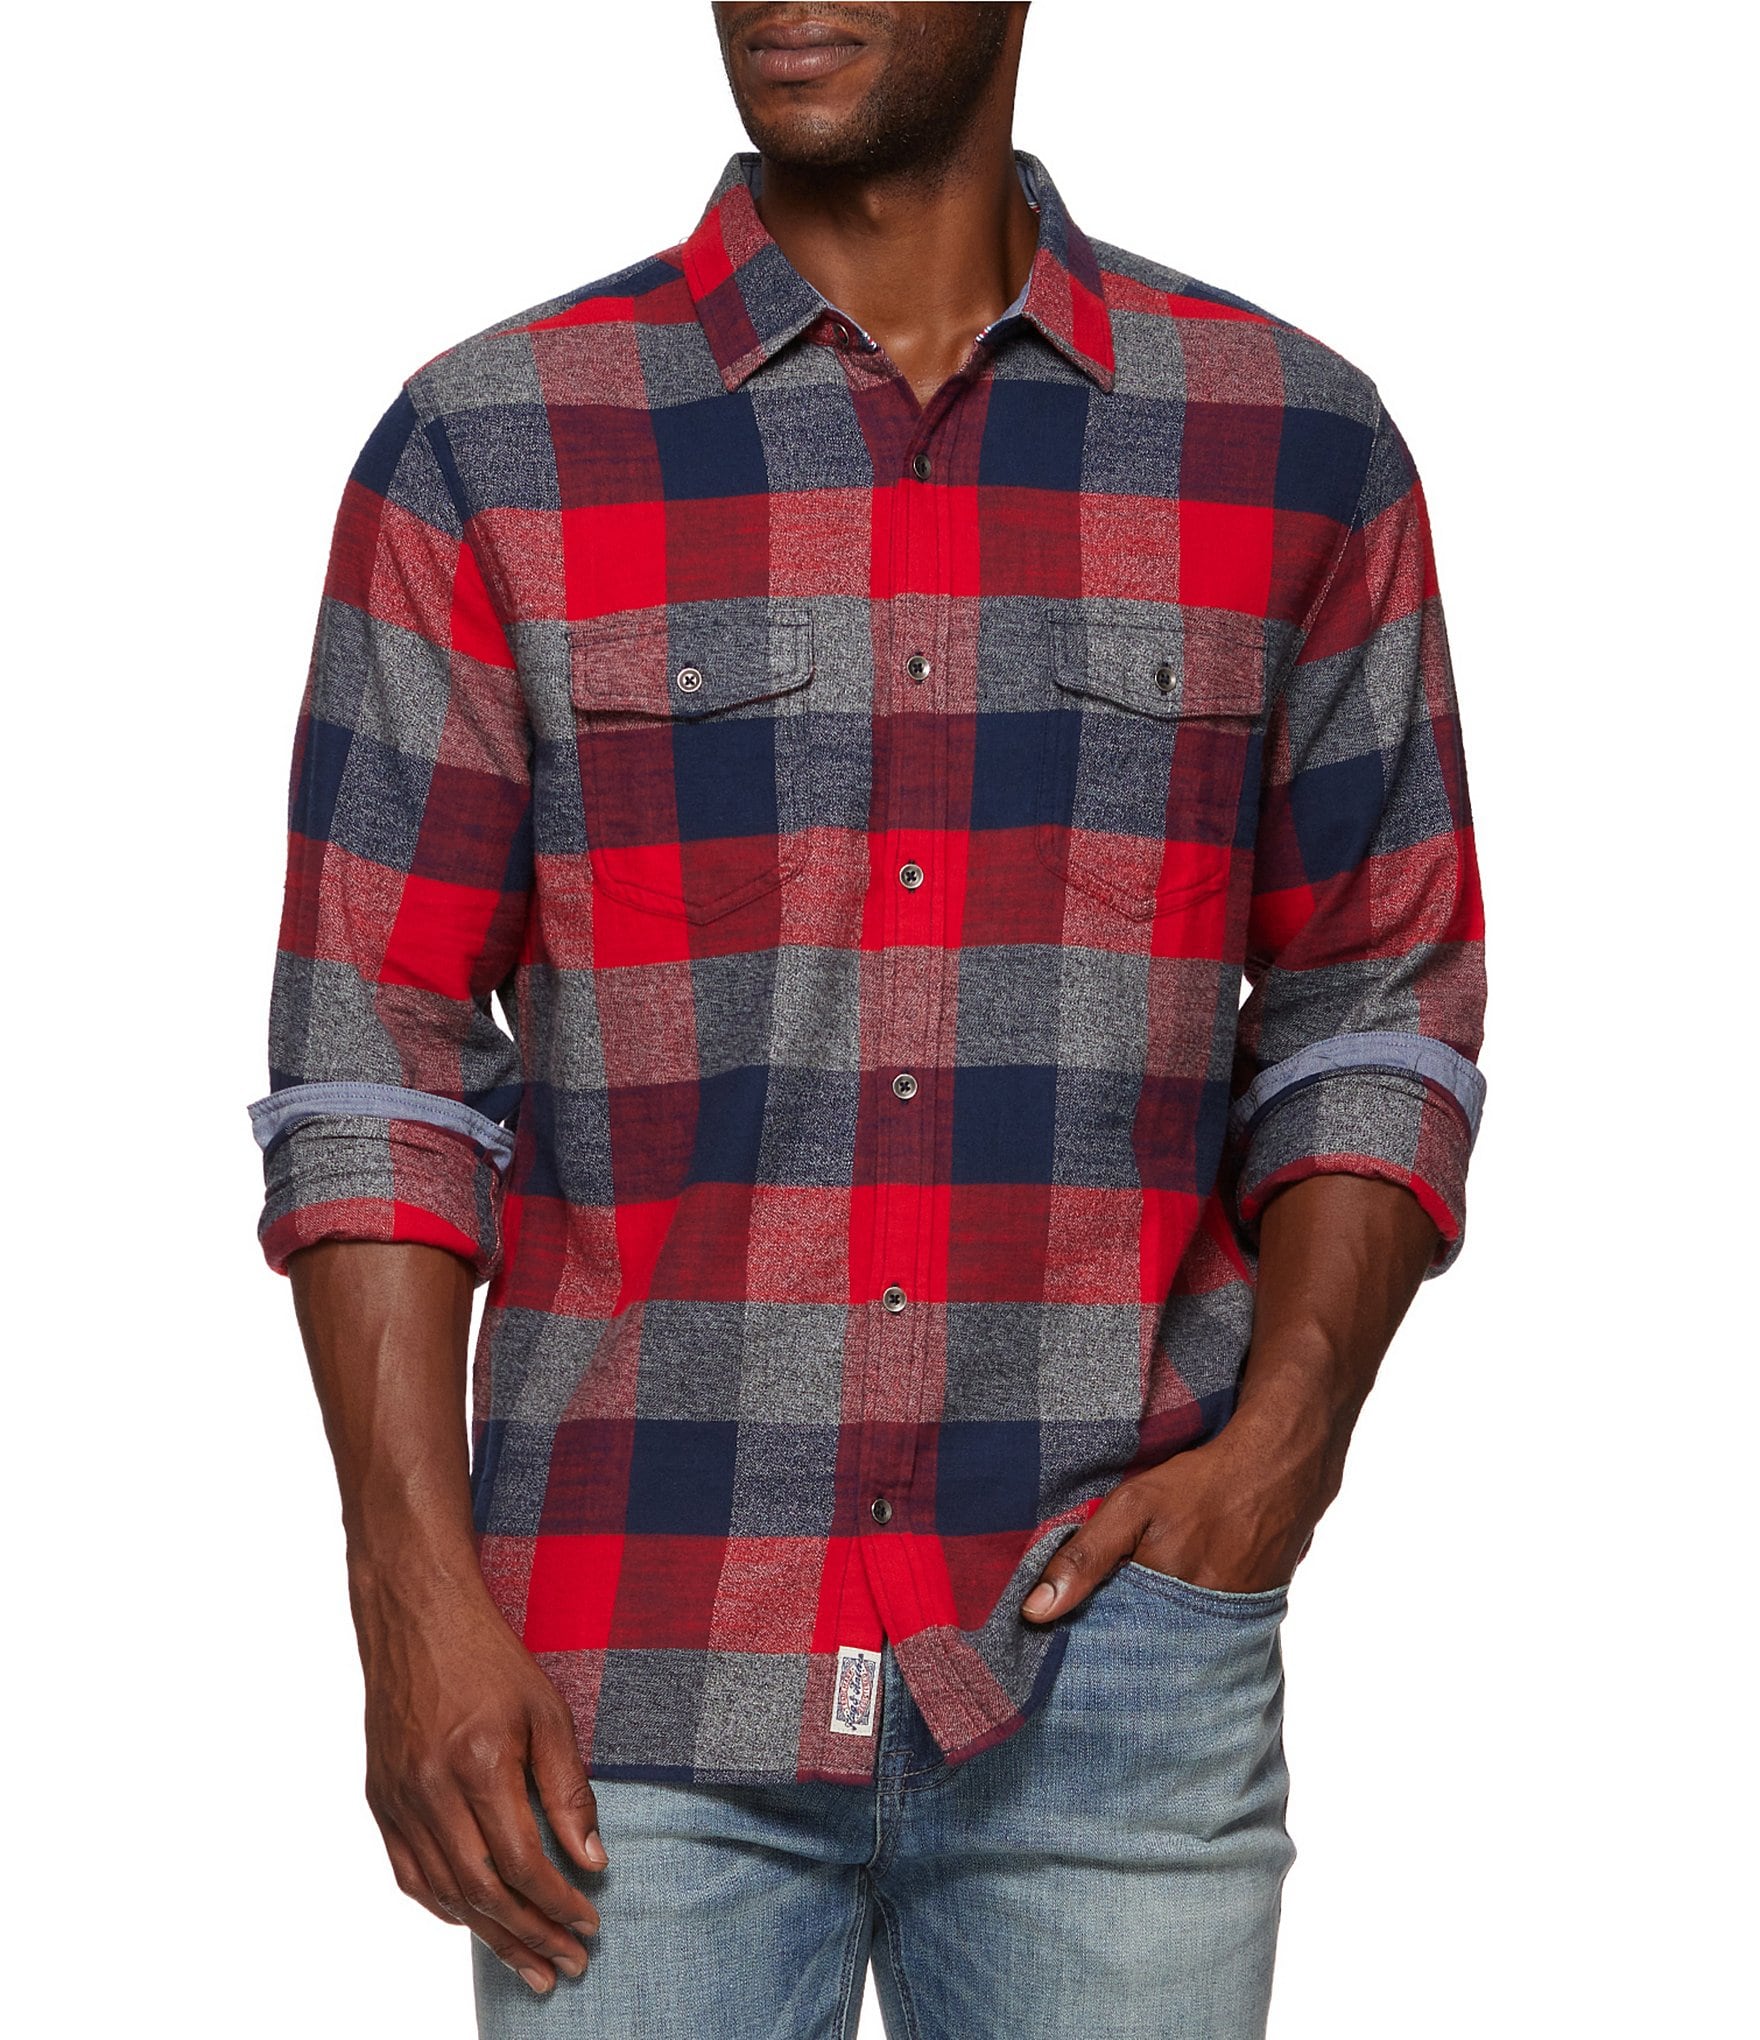 Roundtree & Yorke Long Sleeve Heavy Twill Camo Print Sport Shirt